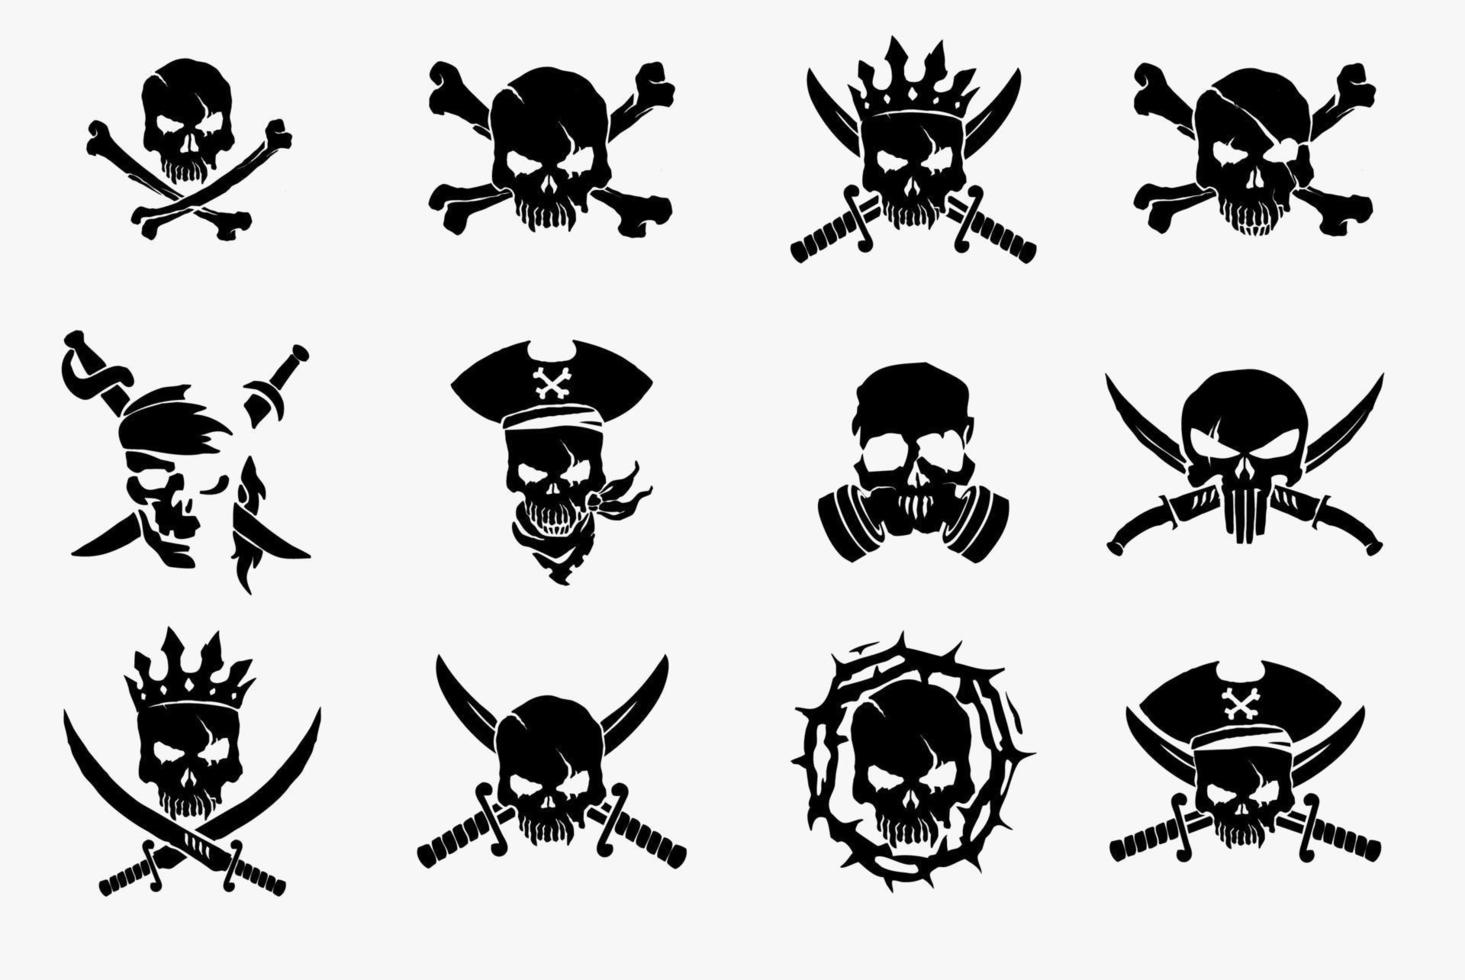 en samling av 12 vektorskallar som du kan använda dessa piratskallar för att skriva ut på t-shirts, kläder, piratflaggor, muggar, kuddar, snowboards och andra föremål och saker. vektor